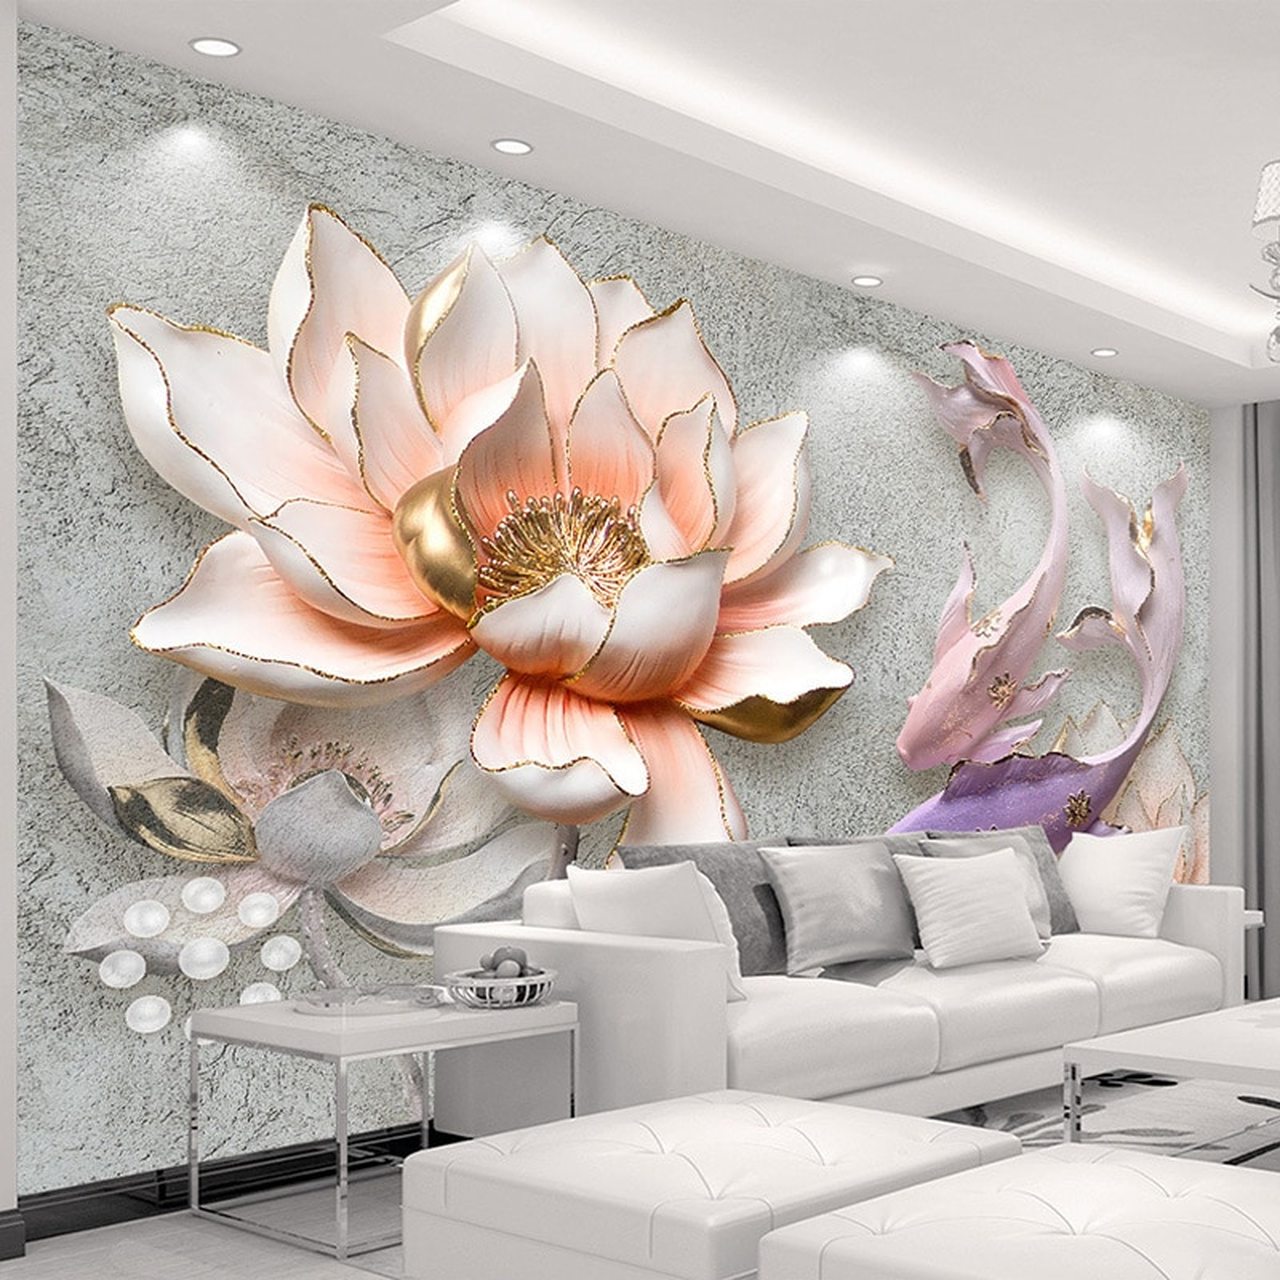 3d lotus fond d'écran en direct,fond d'écran,mur,mural,salon,chambre